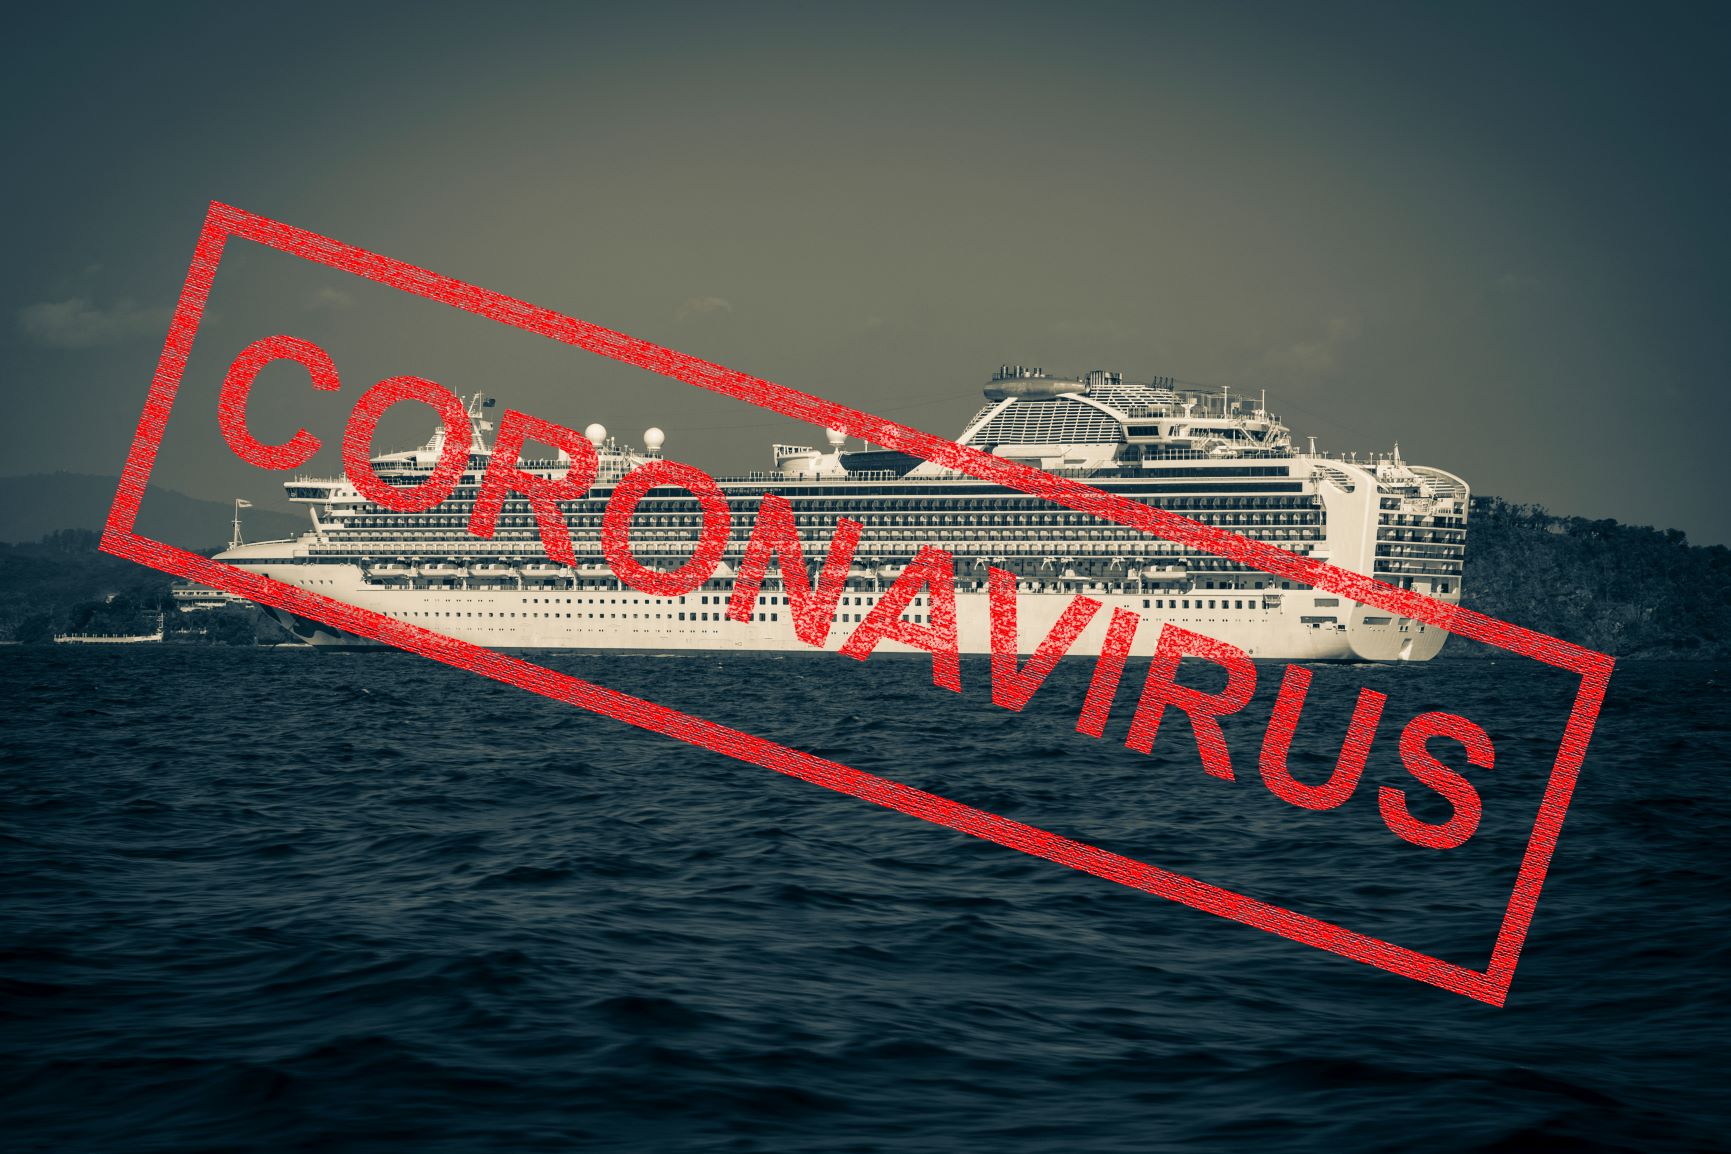 Cruise and Coronavirus